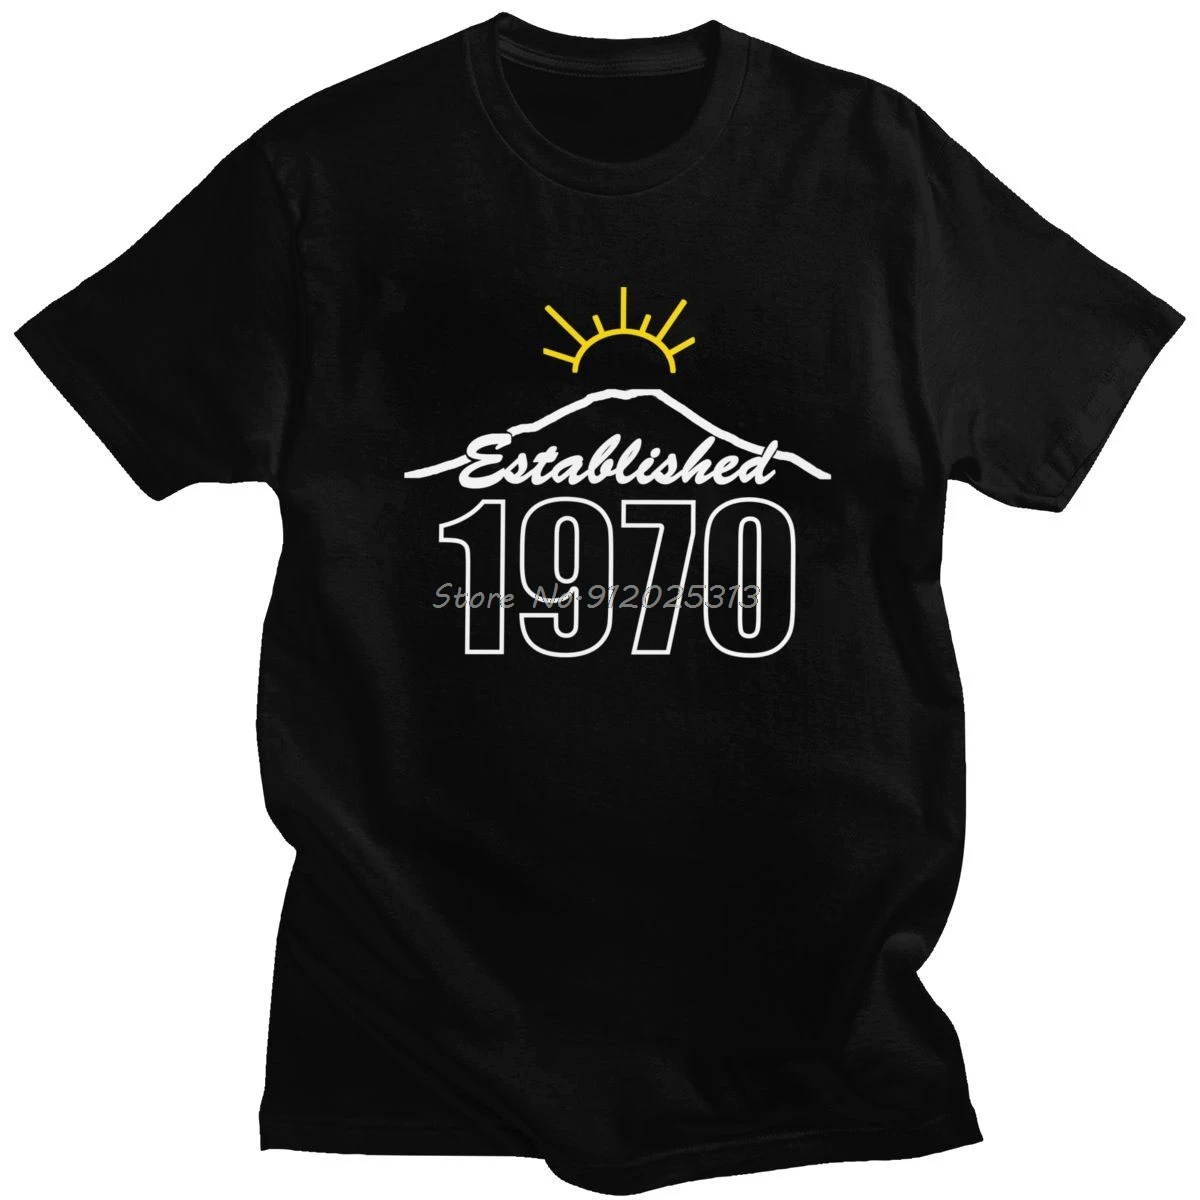 Moda urbana Hecha En 1970 Camiseta de los Hombres O-cuello de Manga Corta de 50 Años de Edad camiseta de Regalo de Cumpleaños de Algodón Camiseta Básica Camiseta de Aniversario . ' - ' . 0